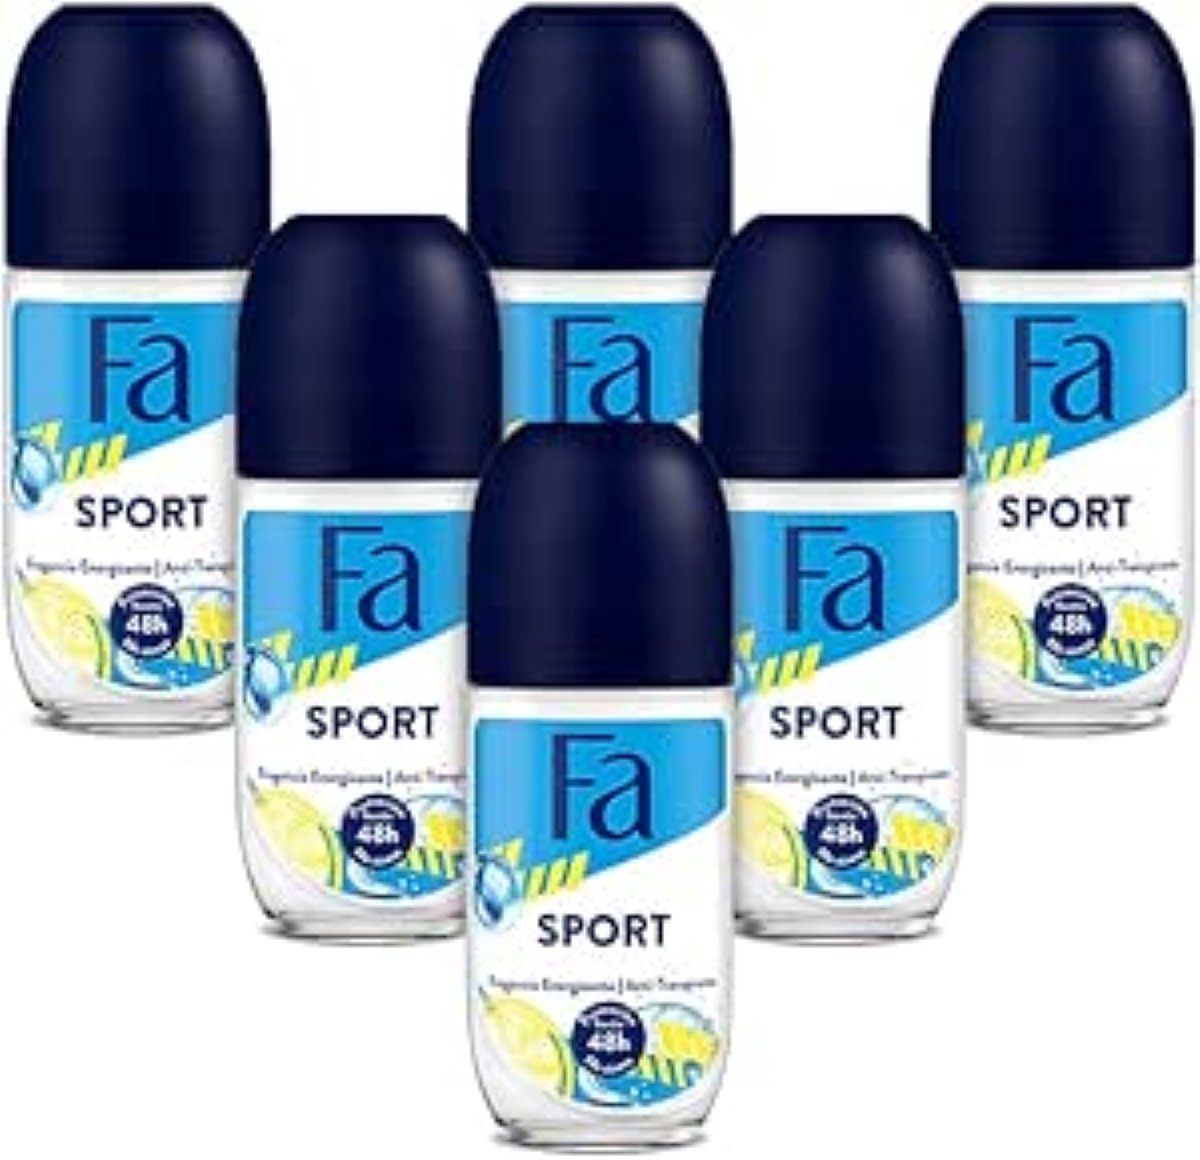 Fa Sport Deoroller - Deodorant - Voordeelverpakking - 6 x 50 ml - Fa